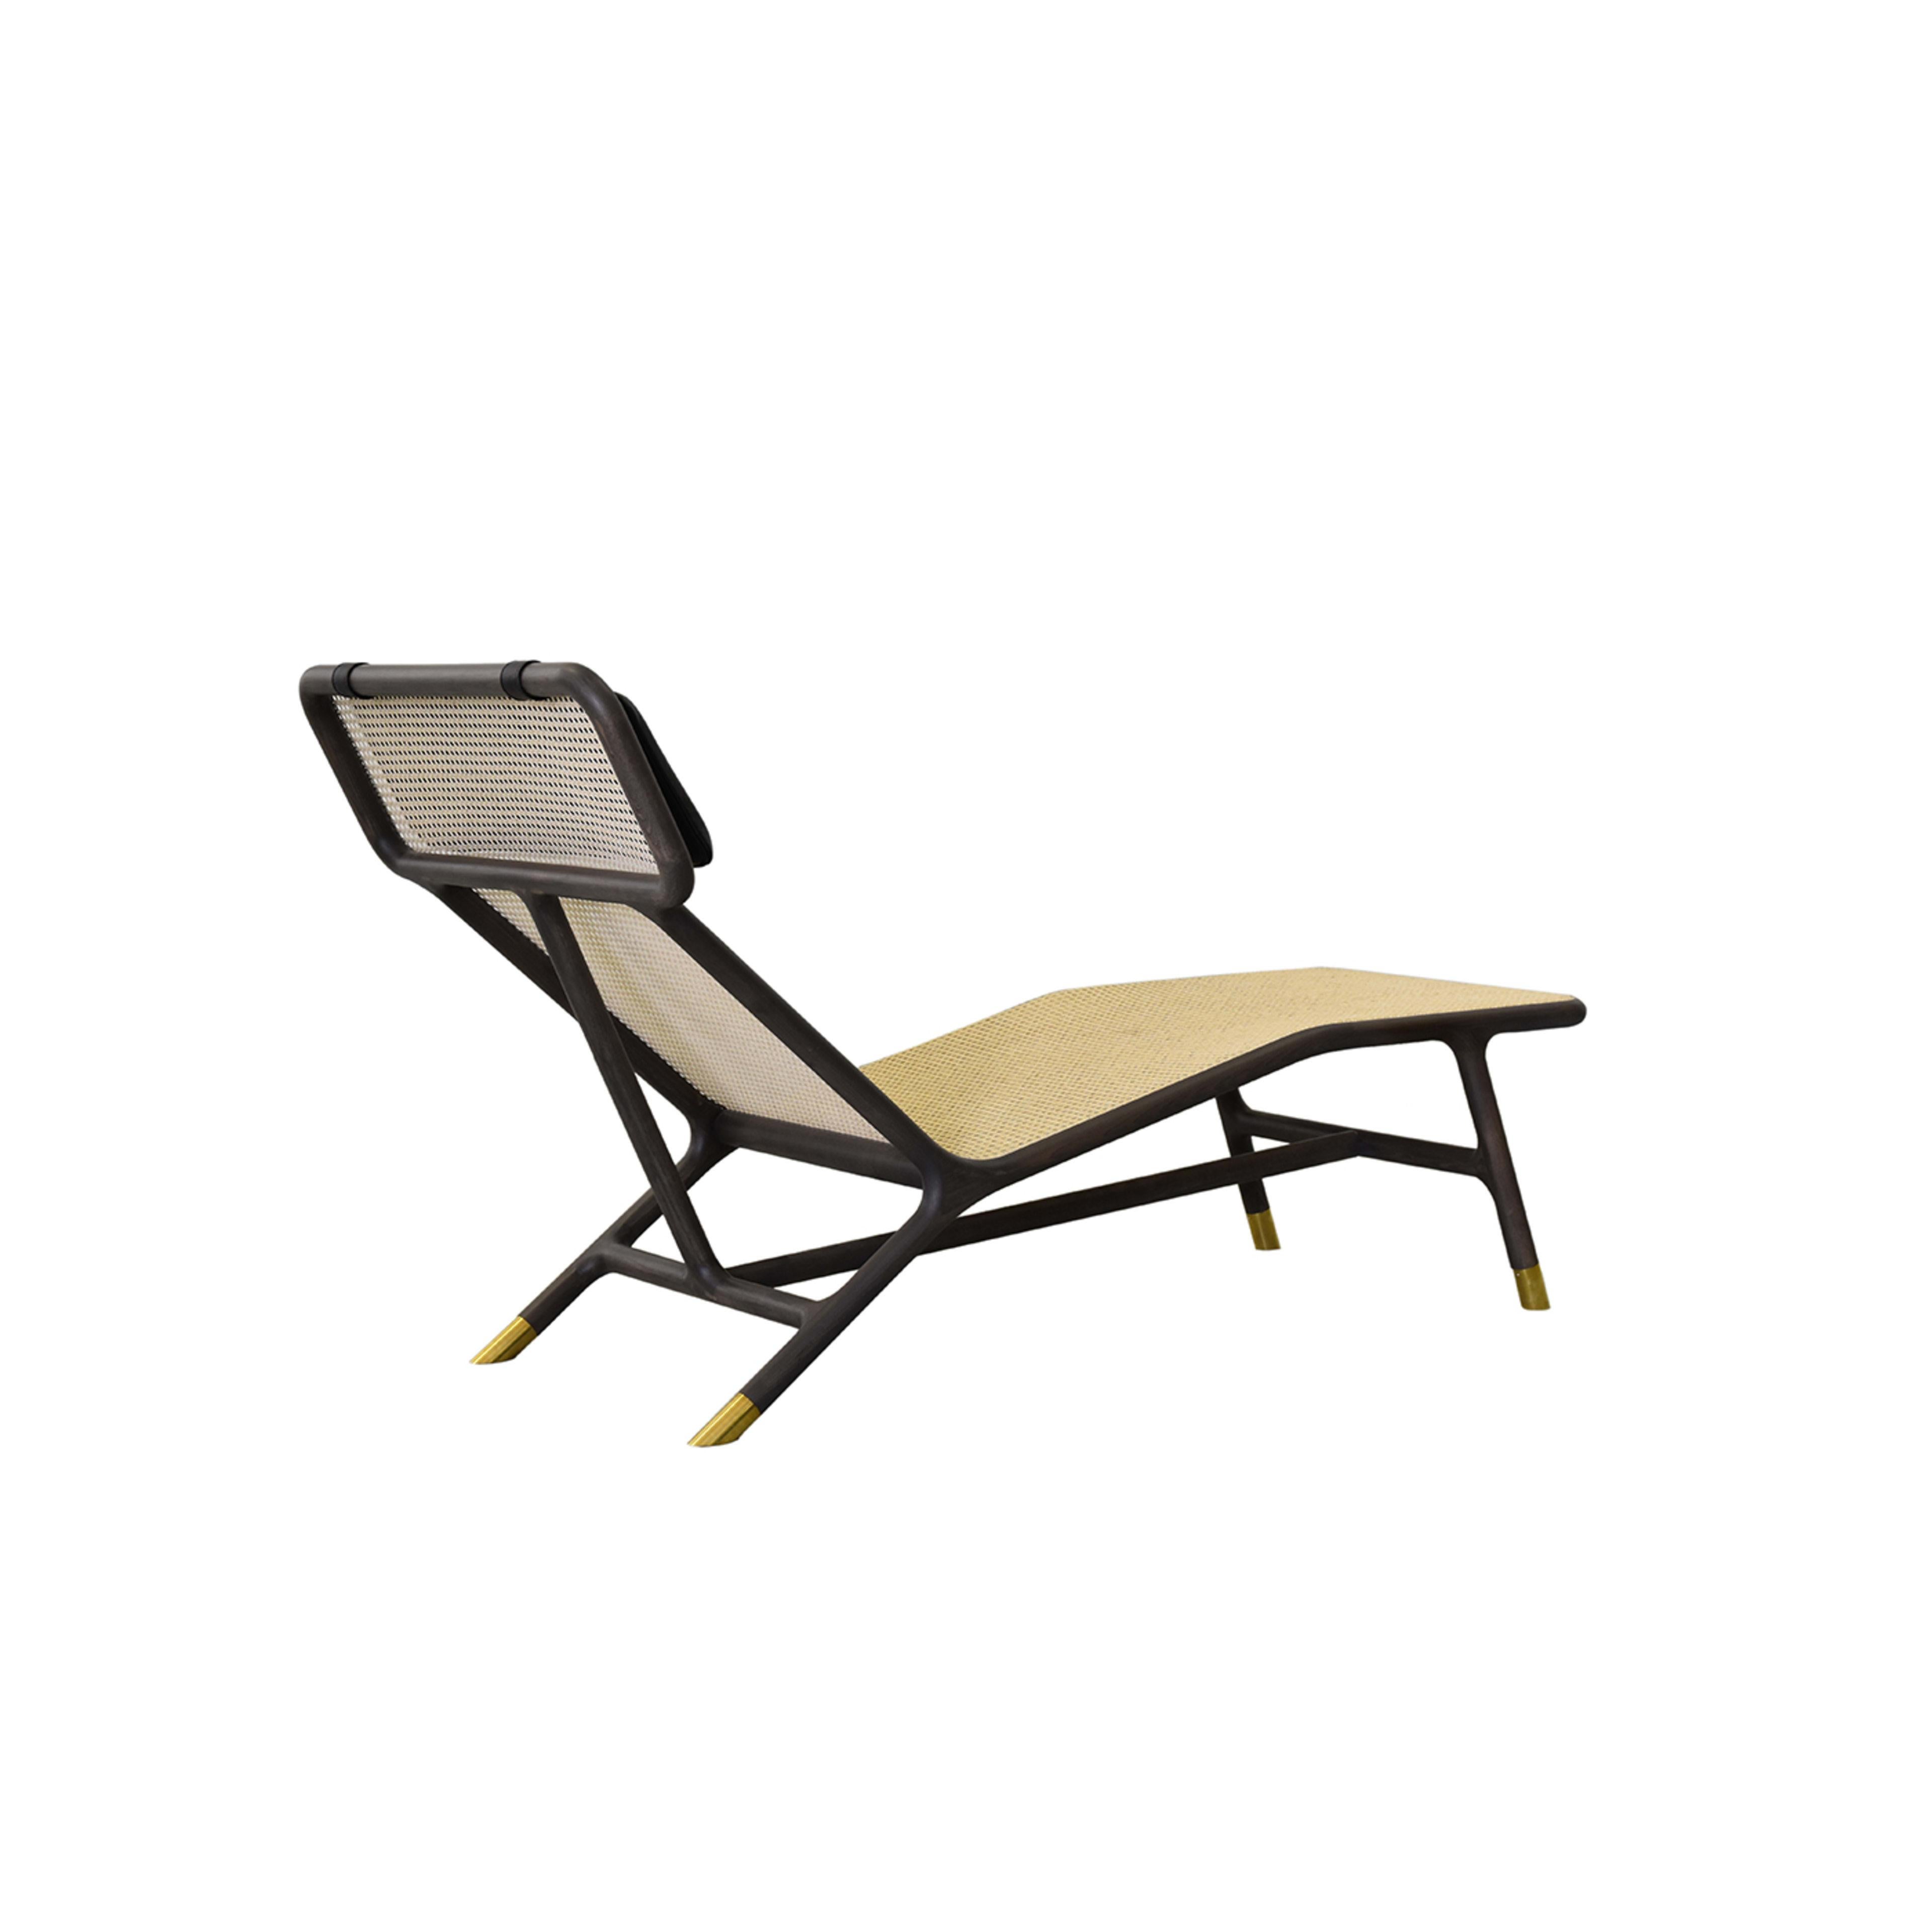 Cette chaise longue classique et intemporelle aura un impact chic dans n'importe quelle pièce de la maison. Présentant une élégante structure en bois de frêne finition noire avec des pieds en laiton poli, et une remarquable assise viennoise tissée.